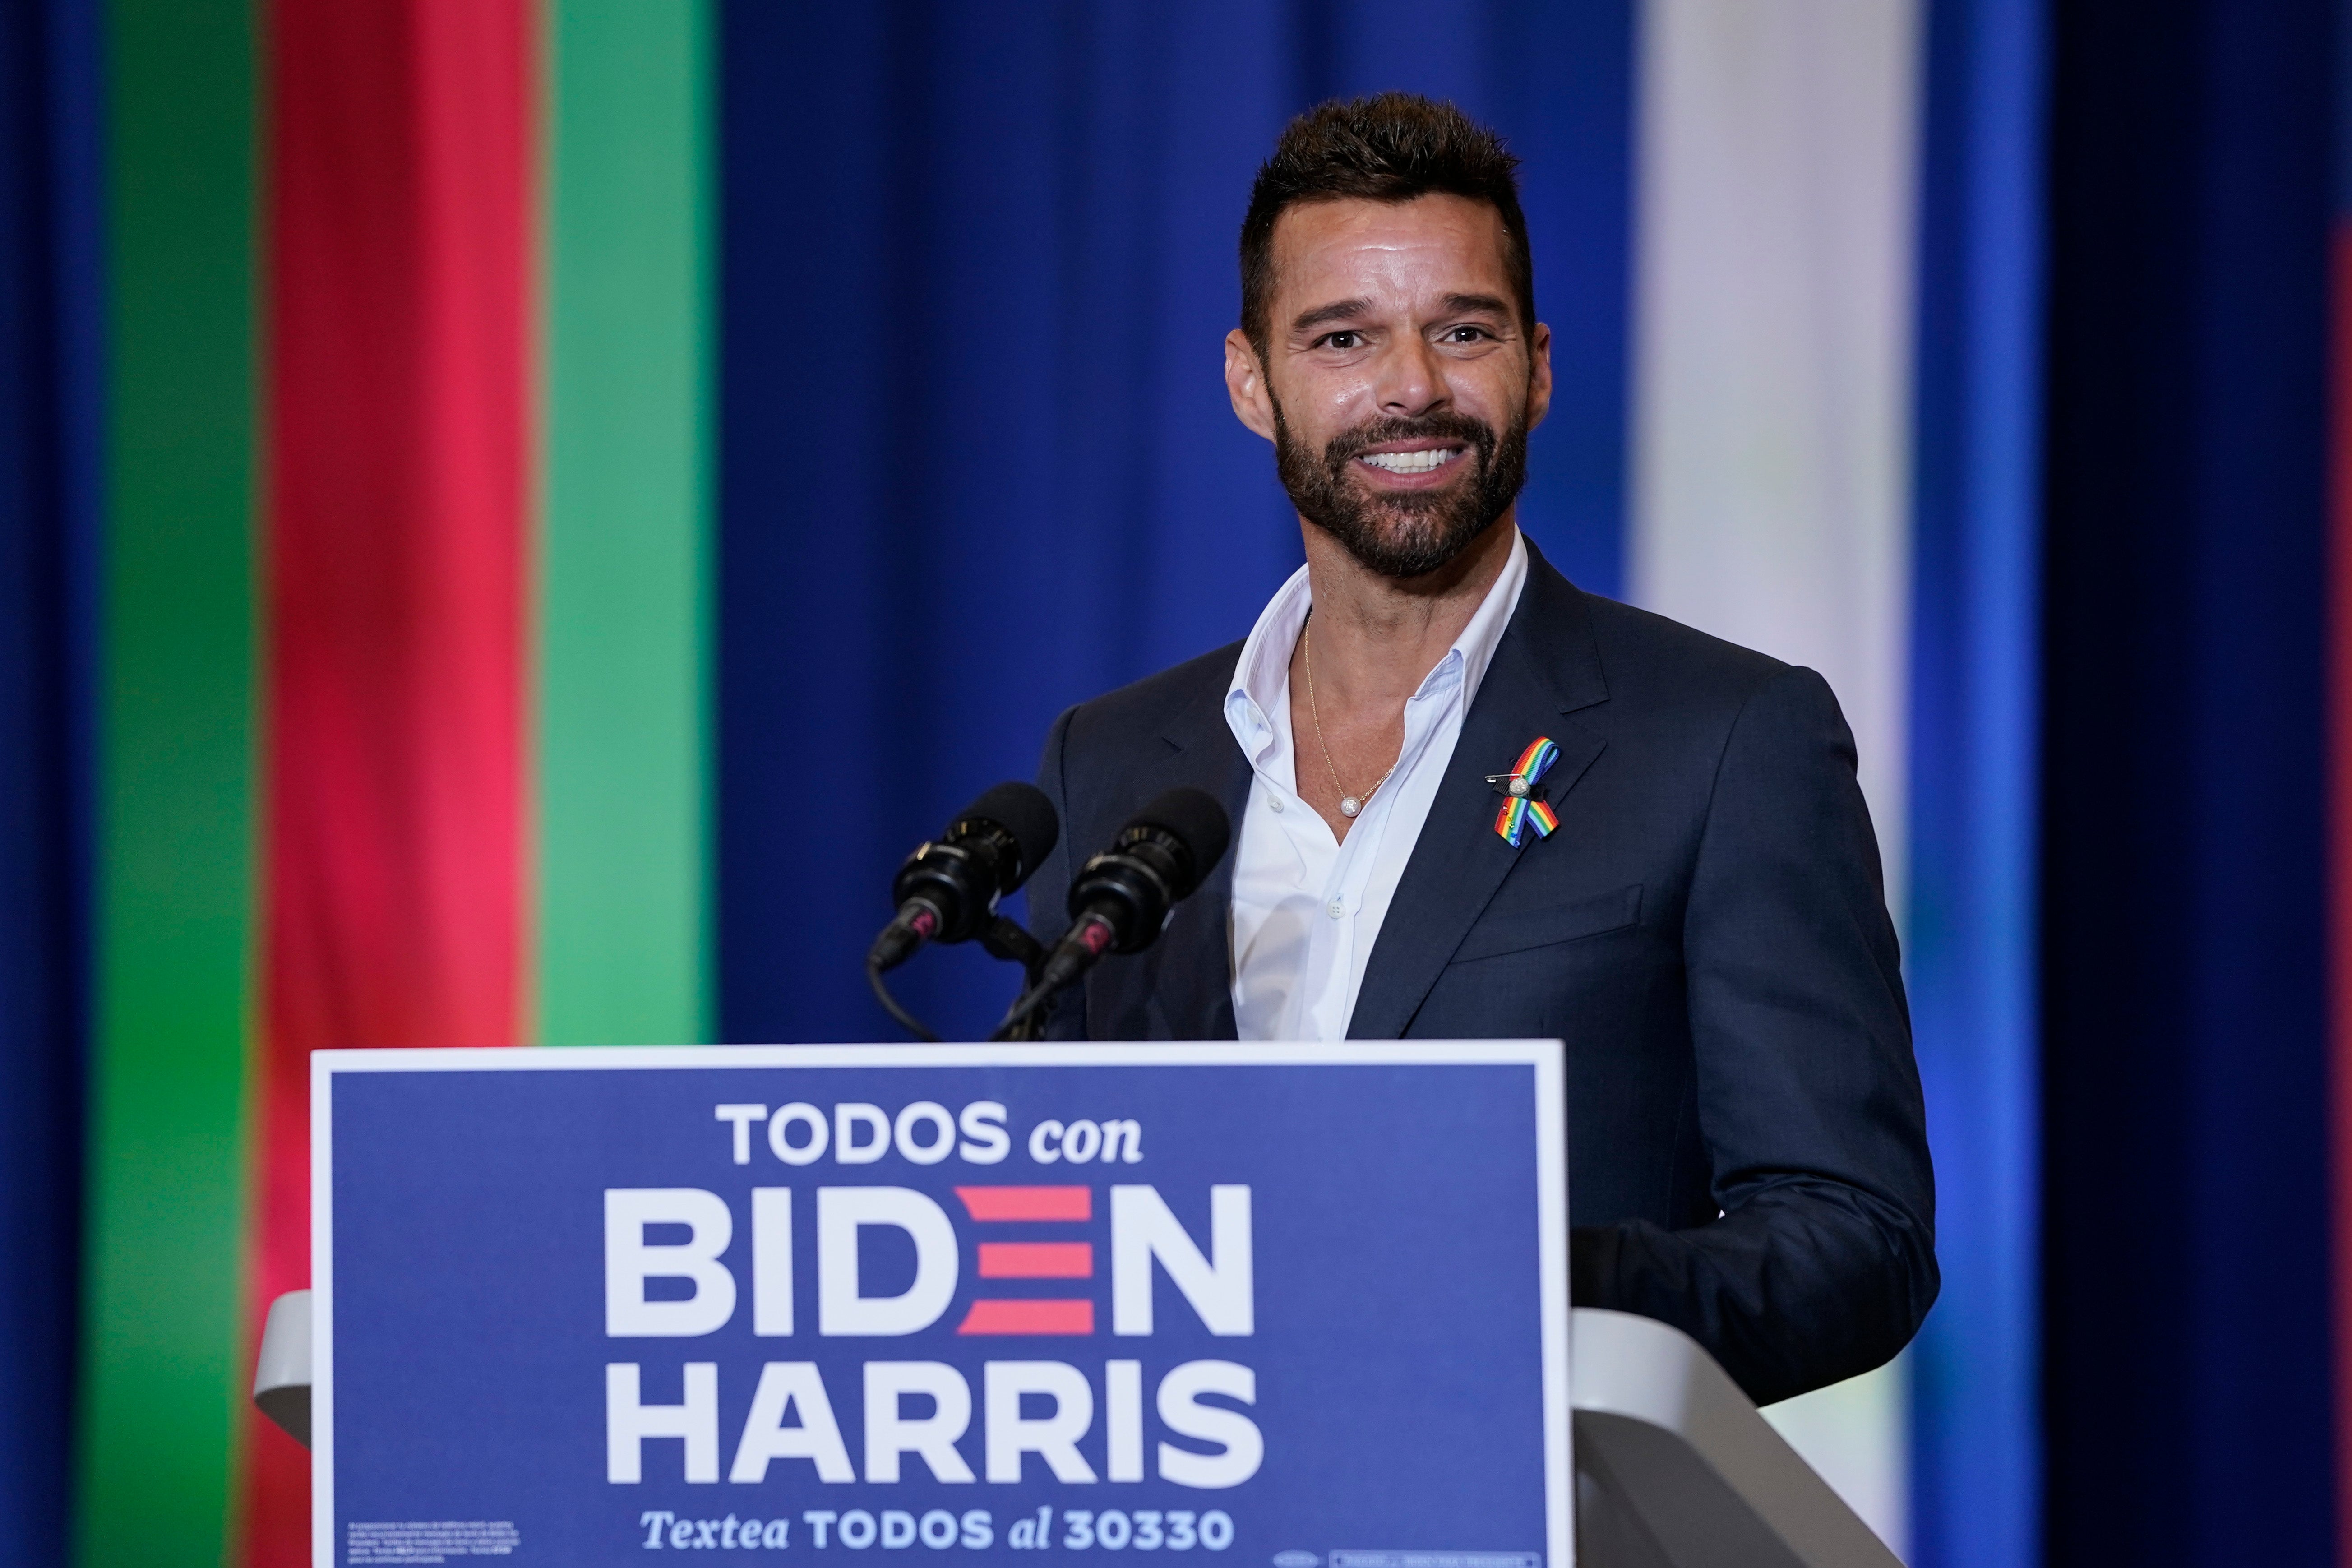 Ricky Martin apoya al candidato Joe Biden para las elecciones estadounidenses 2020.